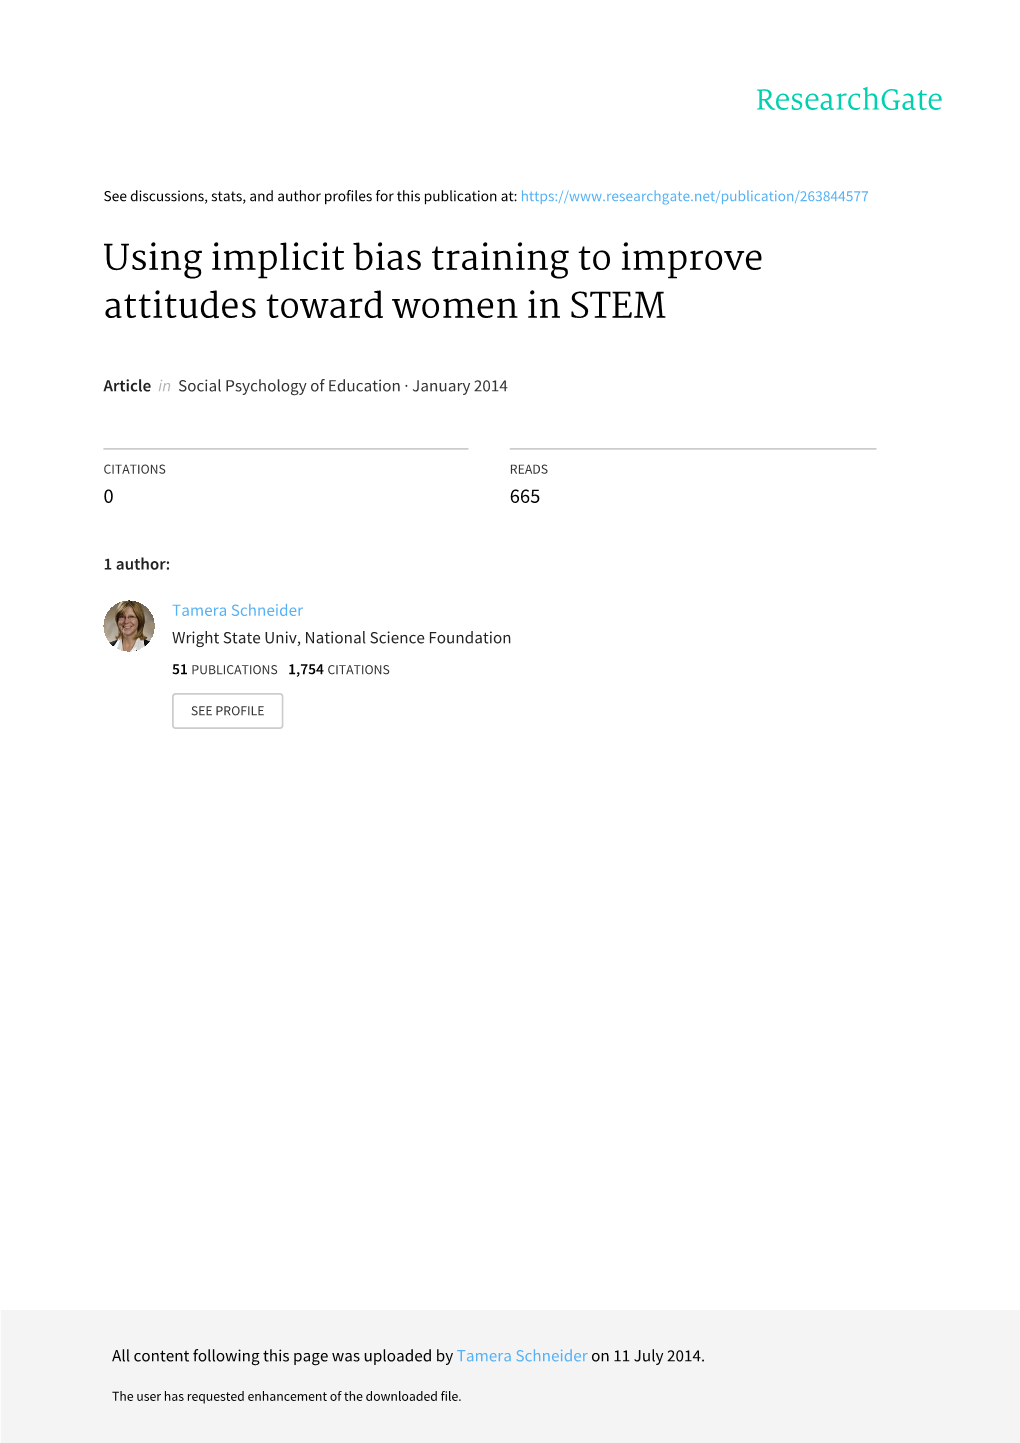 Using Implicit Bias Training to Improve Attitudes Toward Women in STEM